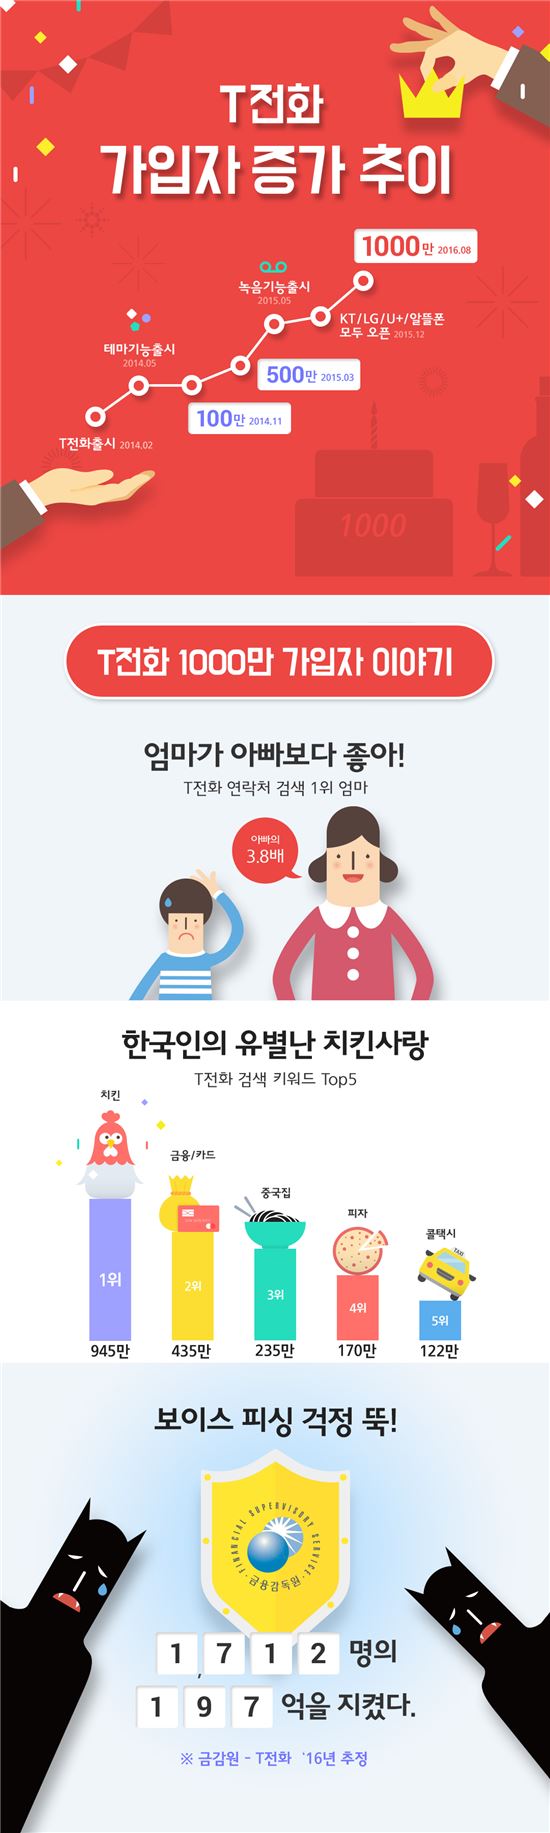 SKT, T전화 가입자 1000만 돌파…가장 많이 검색한 연락처는?